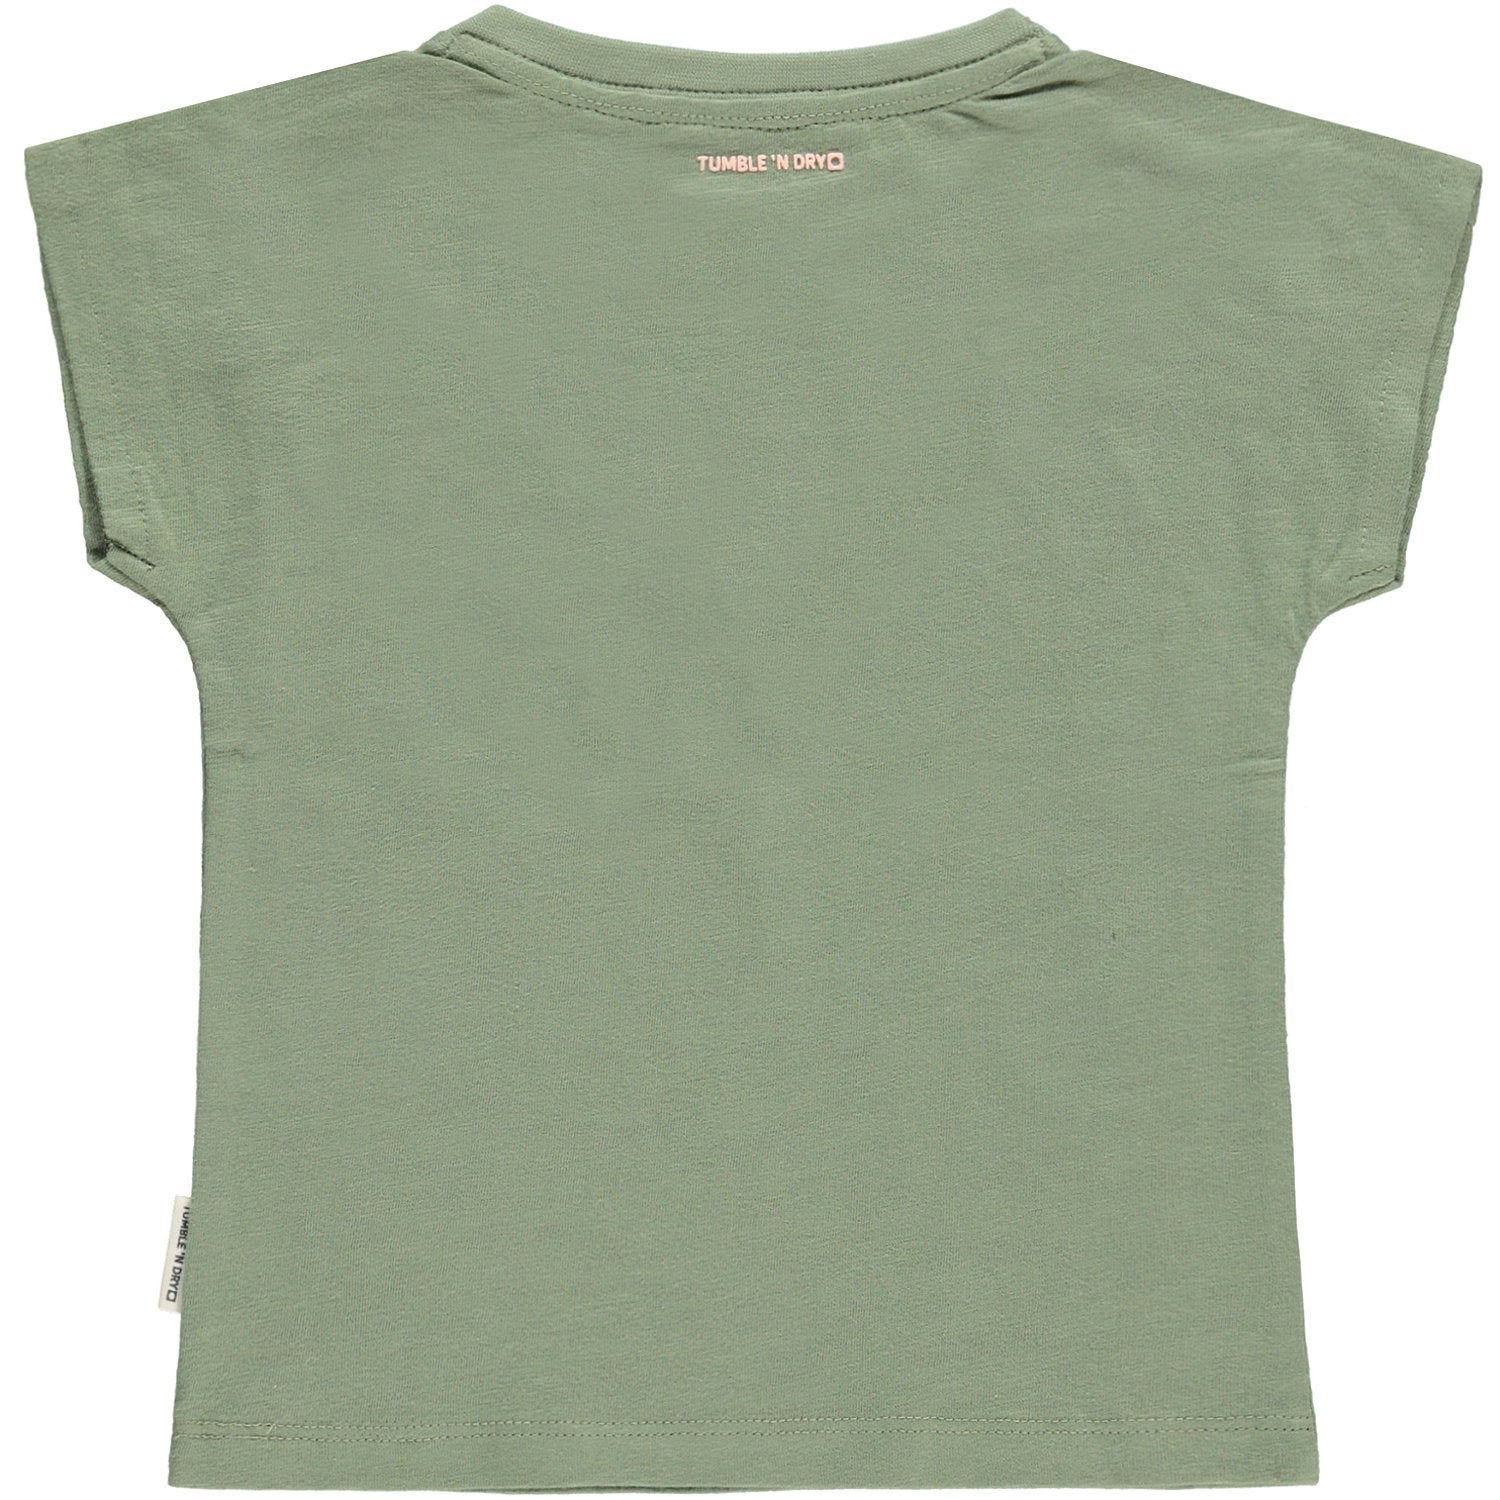 Baby Meisjes T-shirt Km O-hals van Tumble 'n Dry in de kleur Hedge green in maat 86.